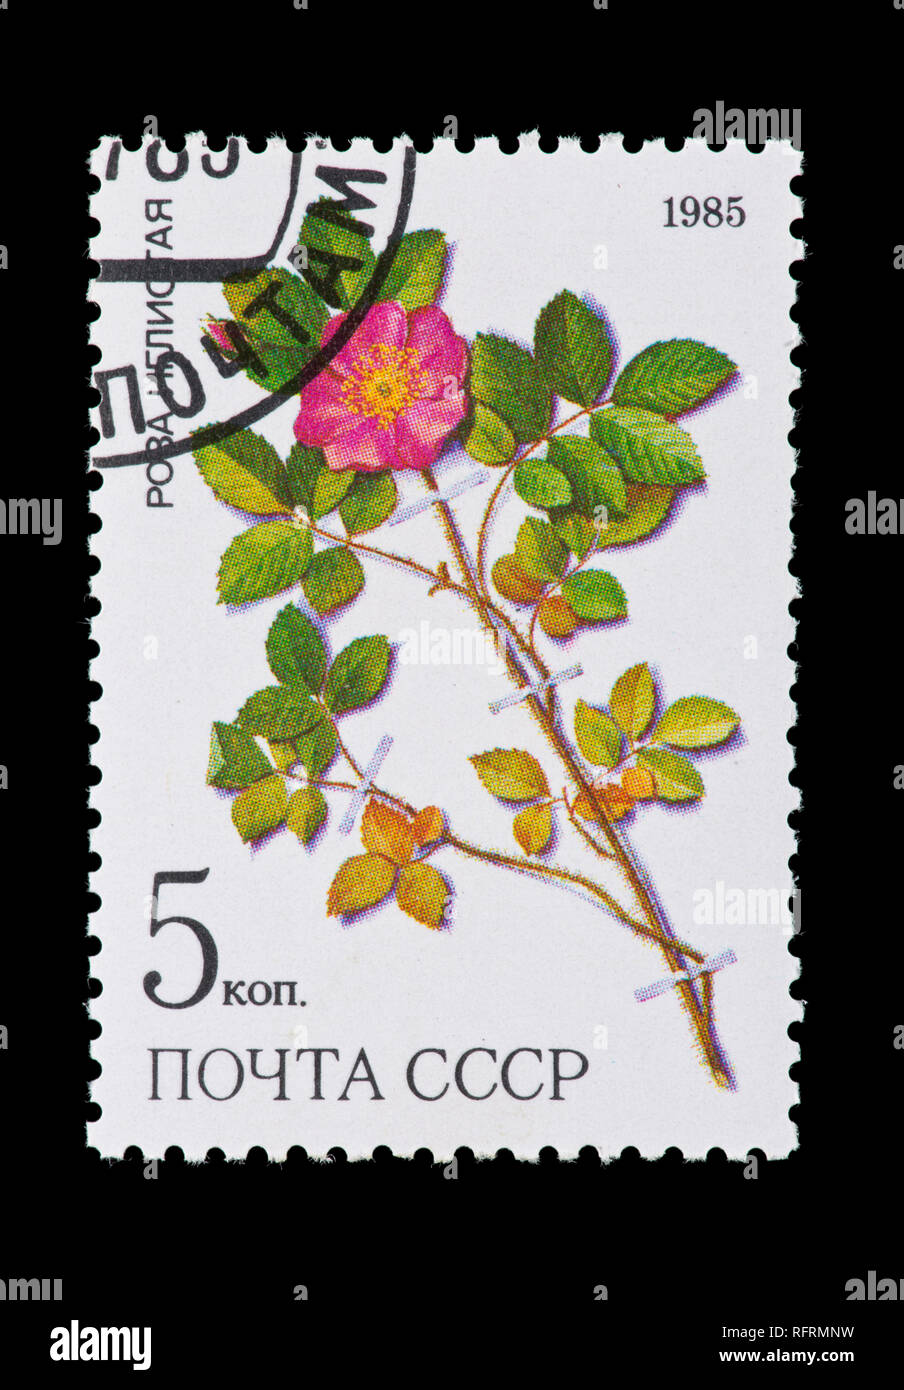 Sello de la Unión Soviética (URSS) que describía Rosa acicularis lindi, planta medicinal de Siberia. Foto de stock